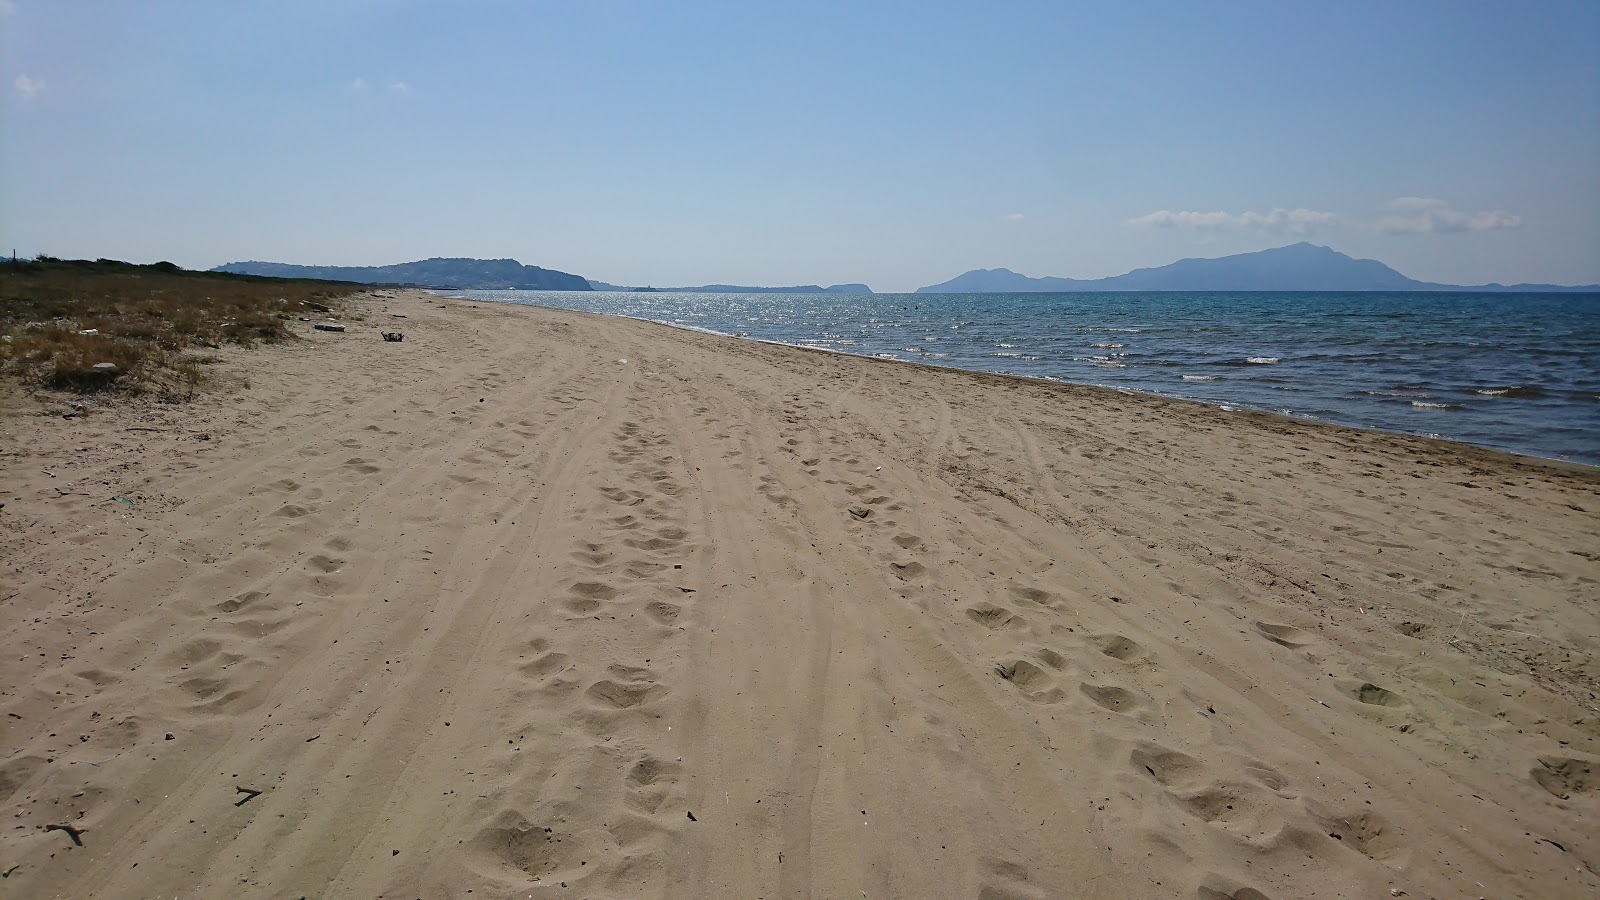 Foto av Spiaggia Romana med lång rak strand